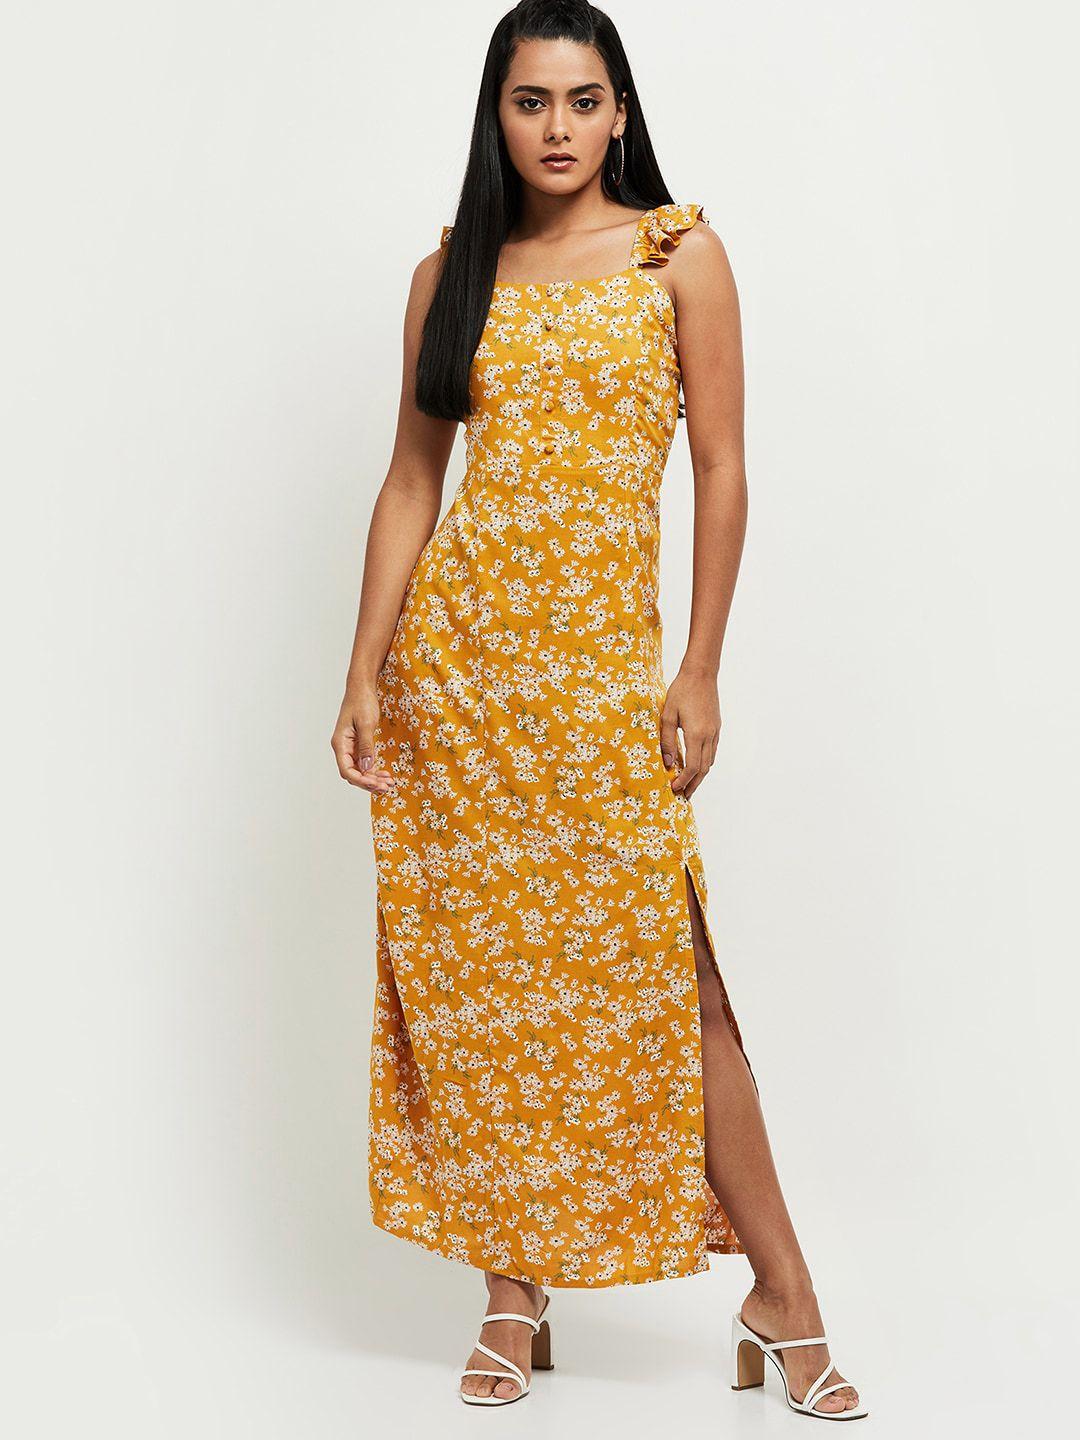 max-mustard-yellow-floral-printed-maxi-dress